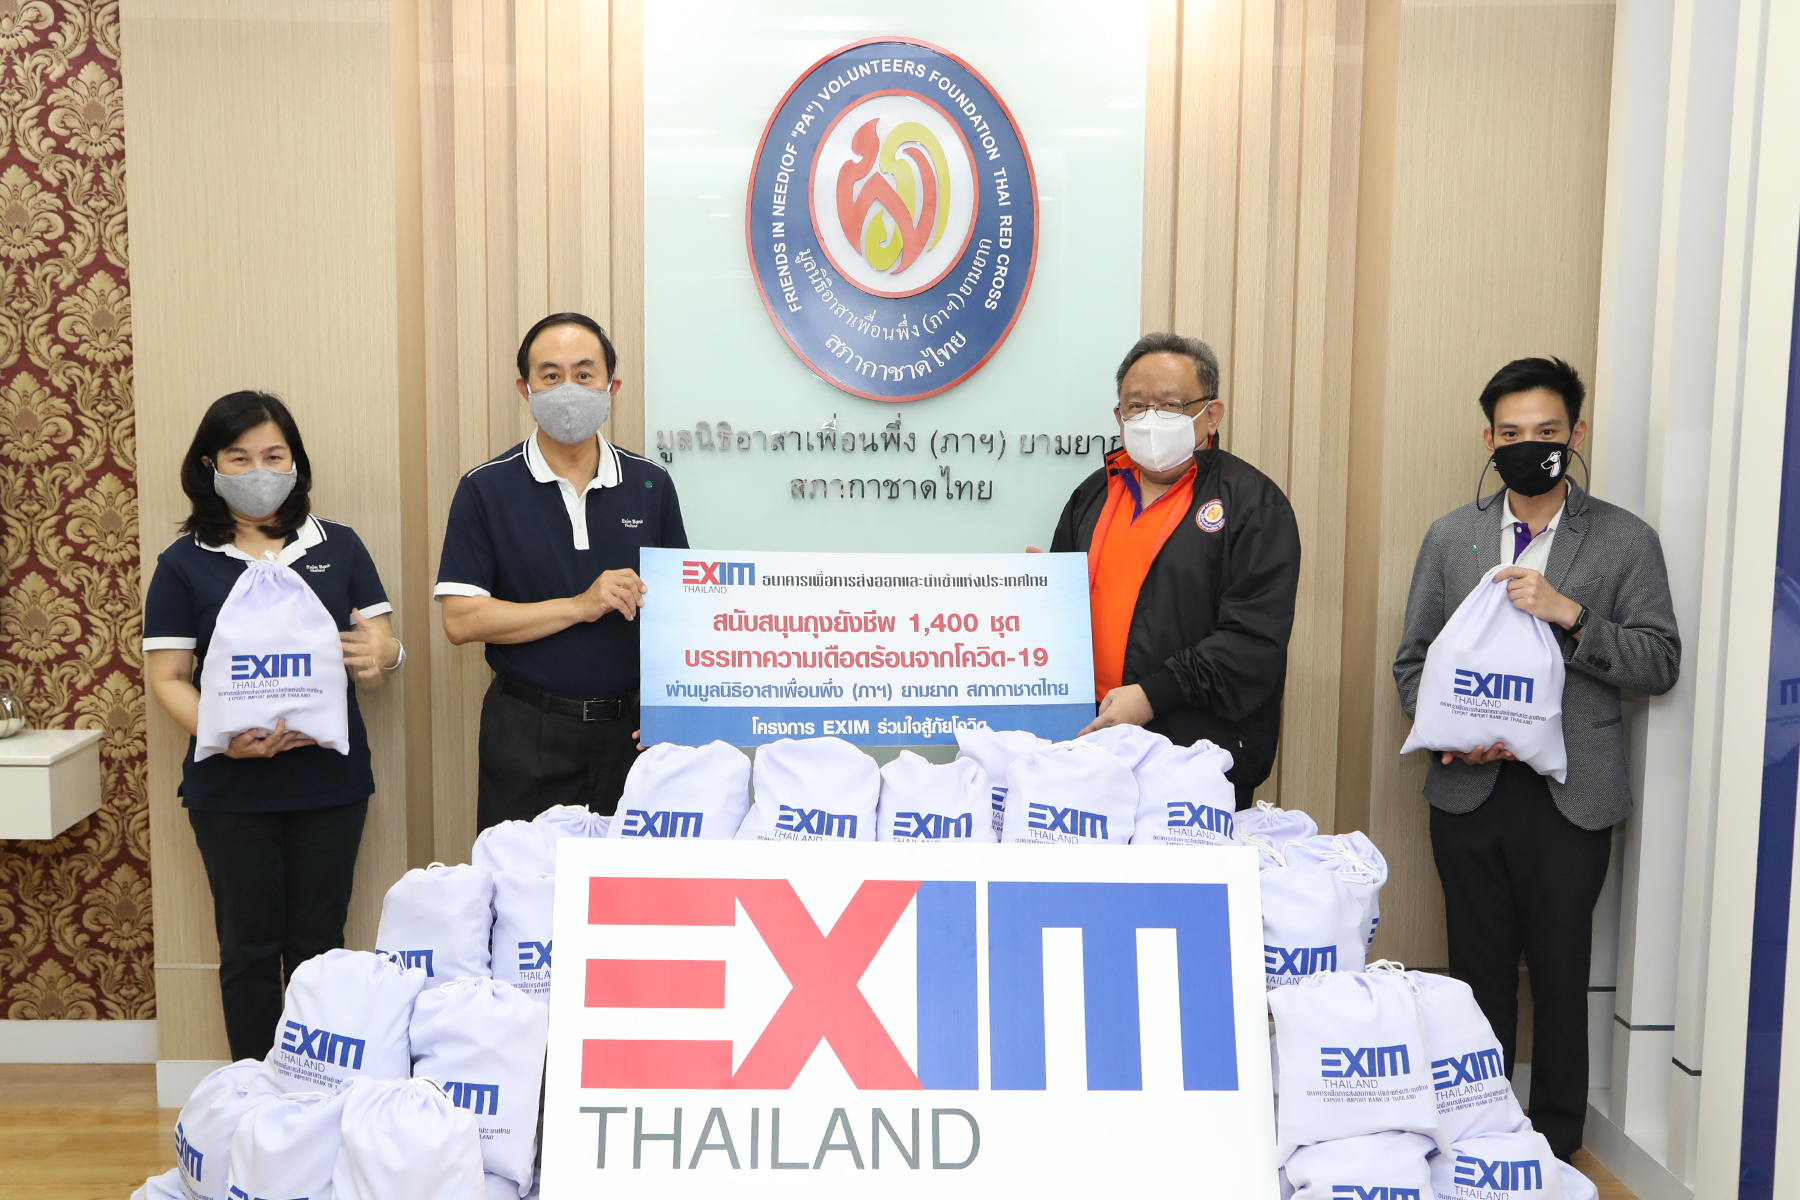 EXIM BANK ร่วมกับมูลนิธิอาสาเพื่อนพึ่ง (ภาฯ) ยามยาก สภากาชาดไทย  จัดทำถุงยังชีพ 1,400 ชุด ช่วยเหลือประชาชนที่ได้รับผลกระทบจากโควิด-19